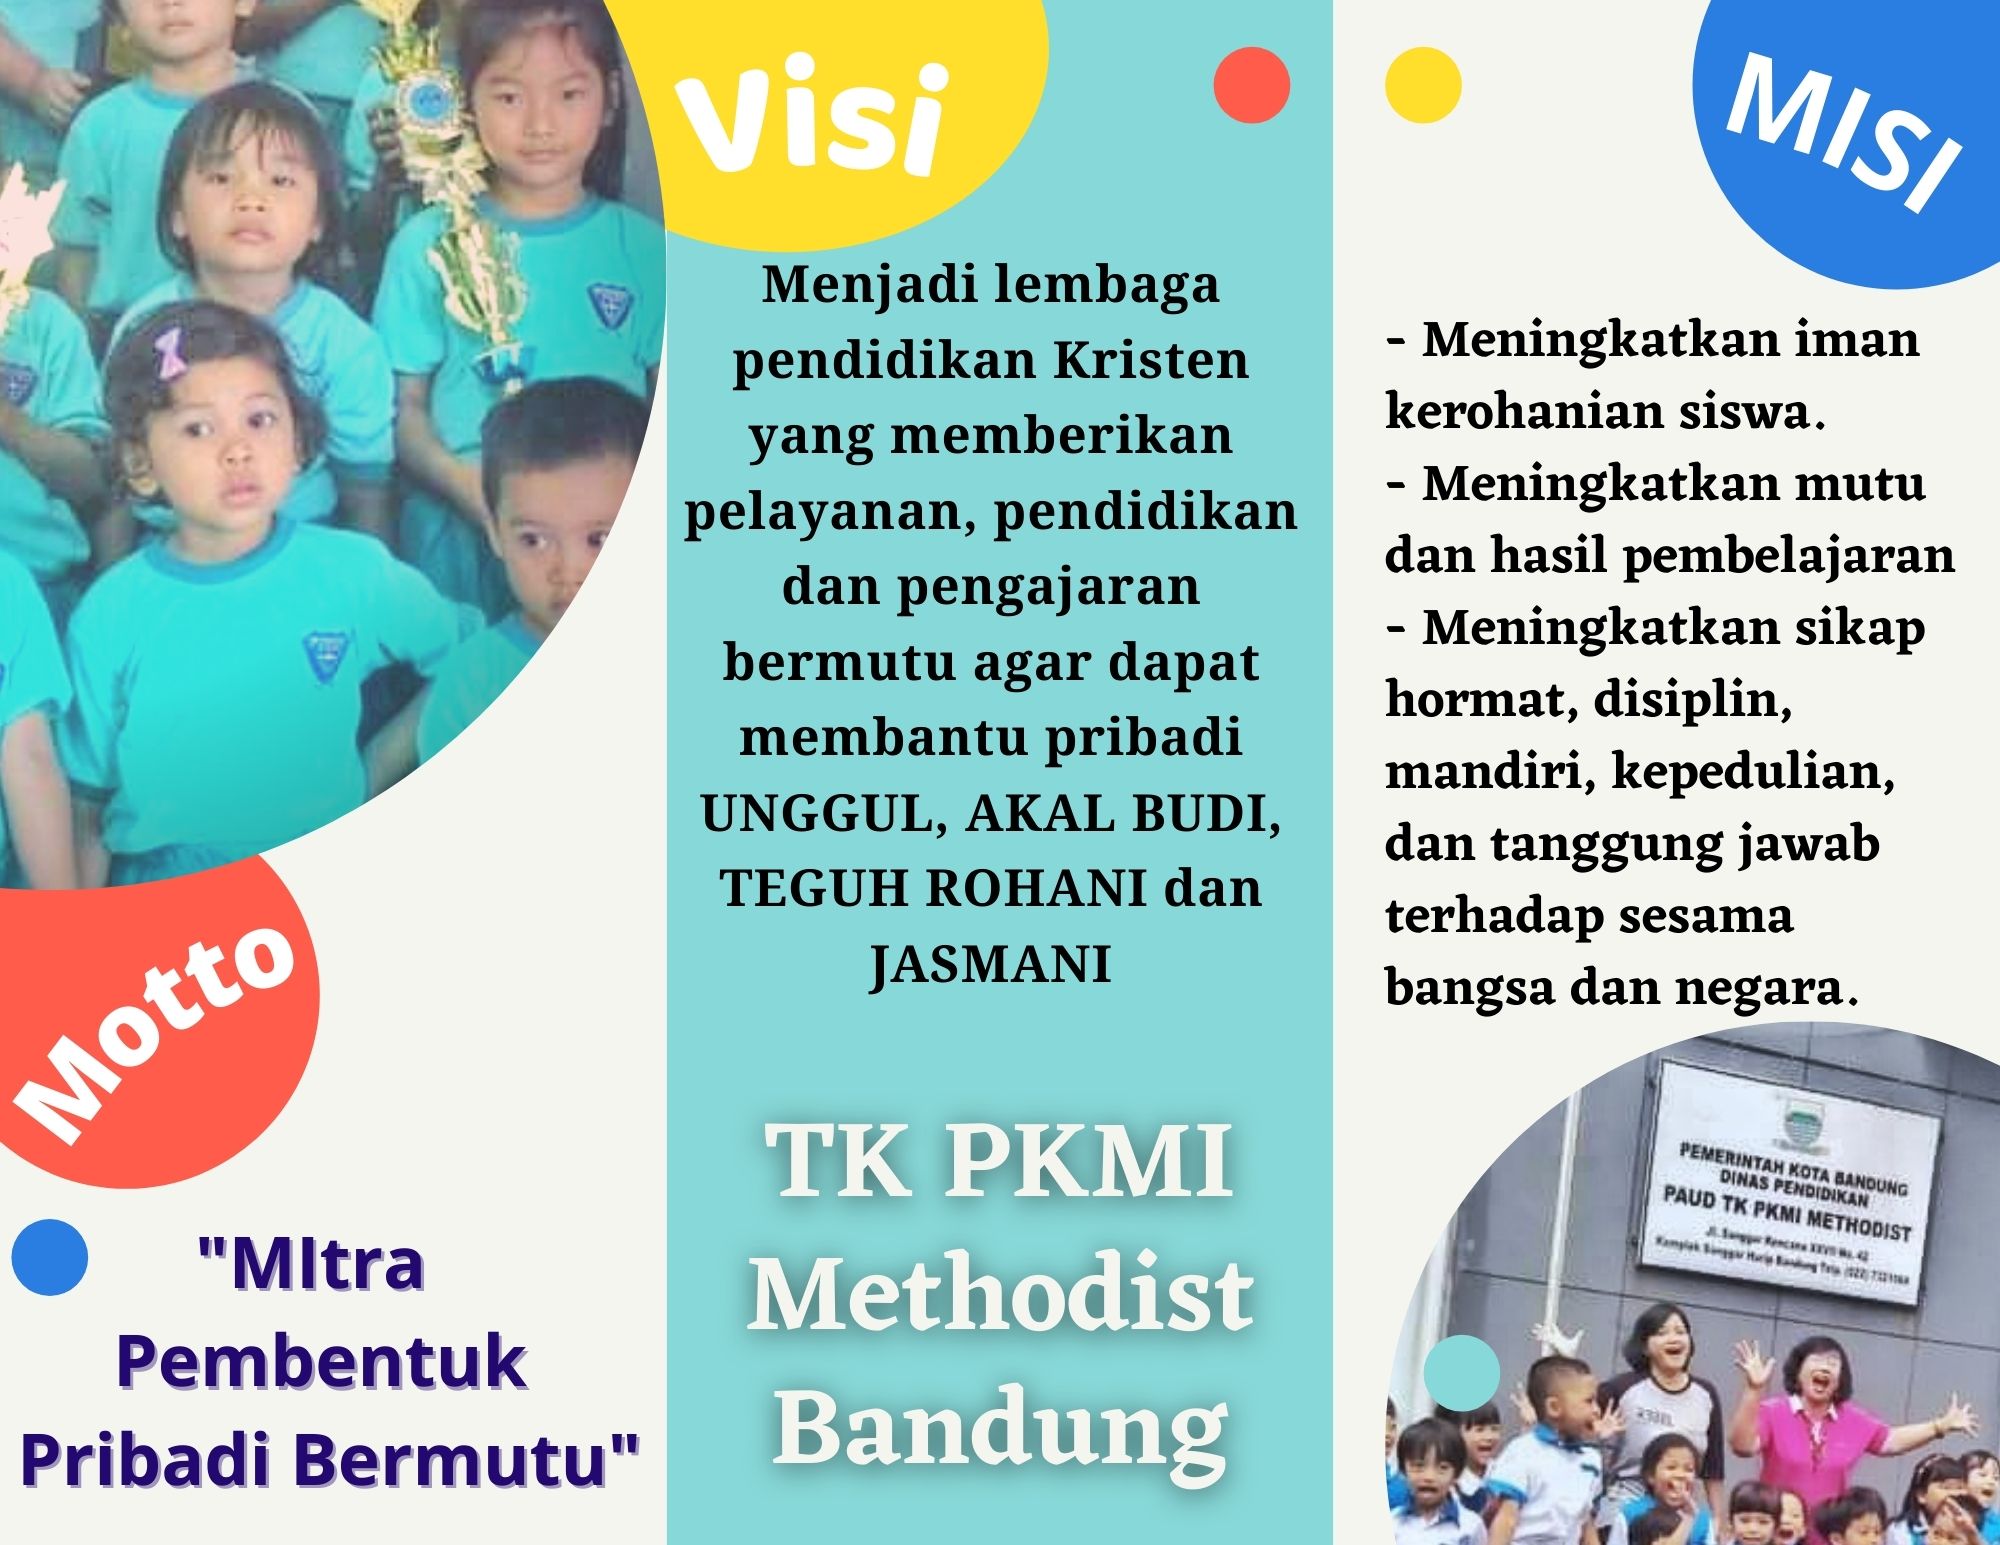 VISi dan Misi TK PKMI Bandung Timur